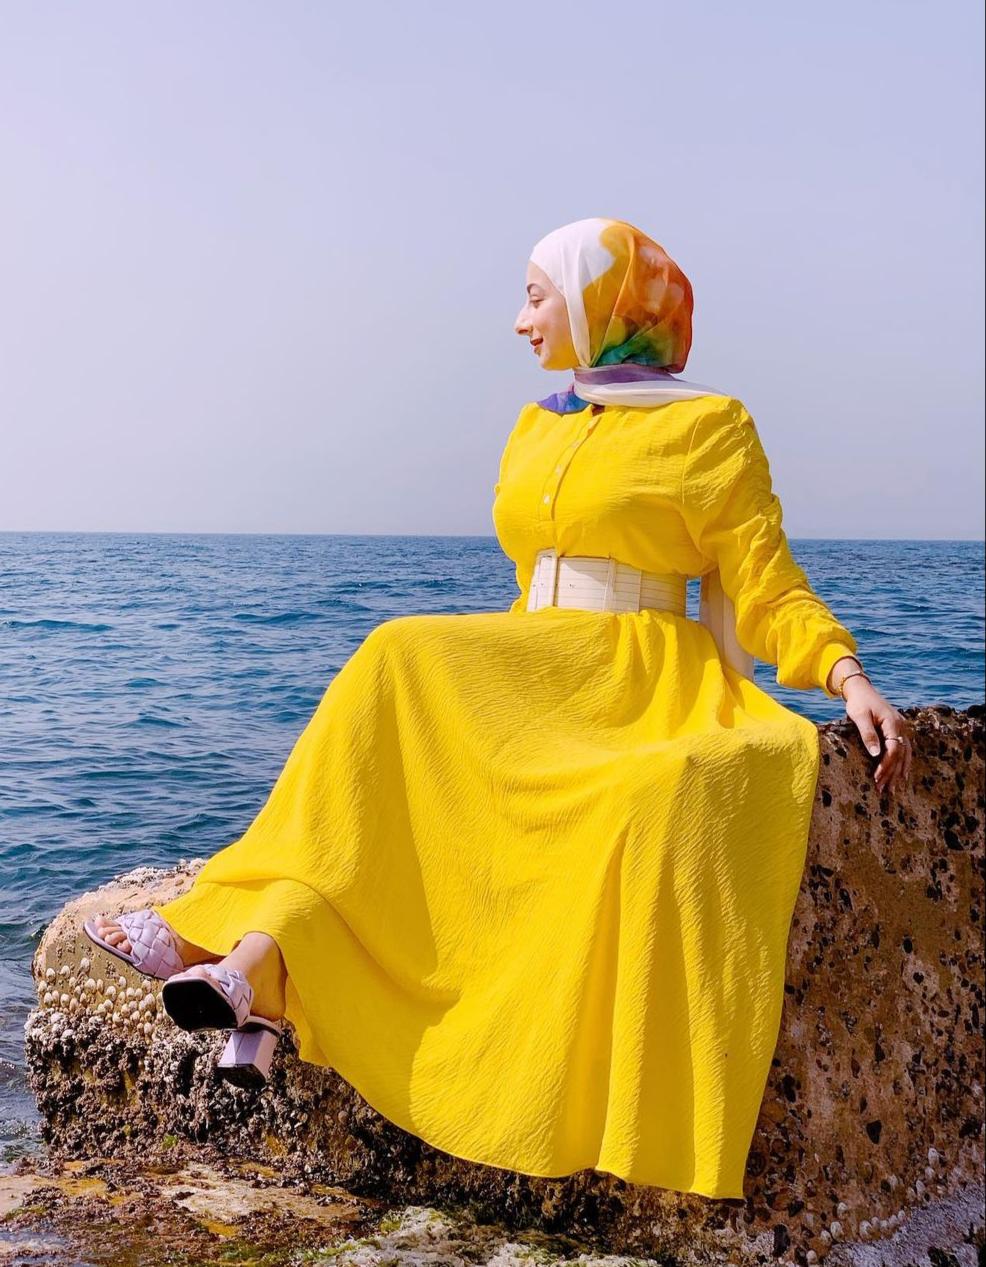  هدير موسى بالفستان الأصفر -الصورة من حسابها على الانستغرام